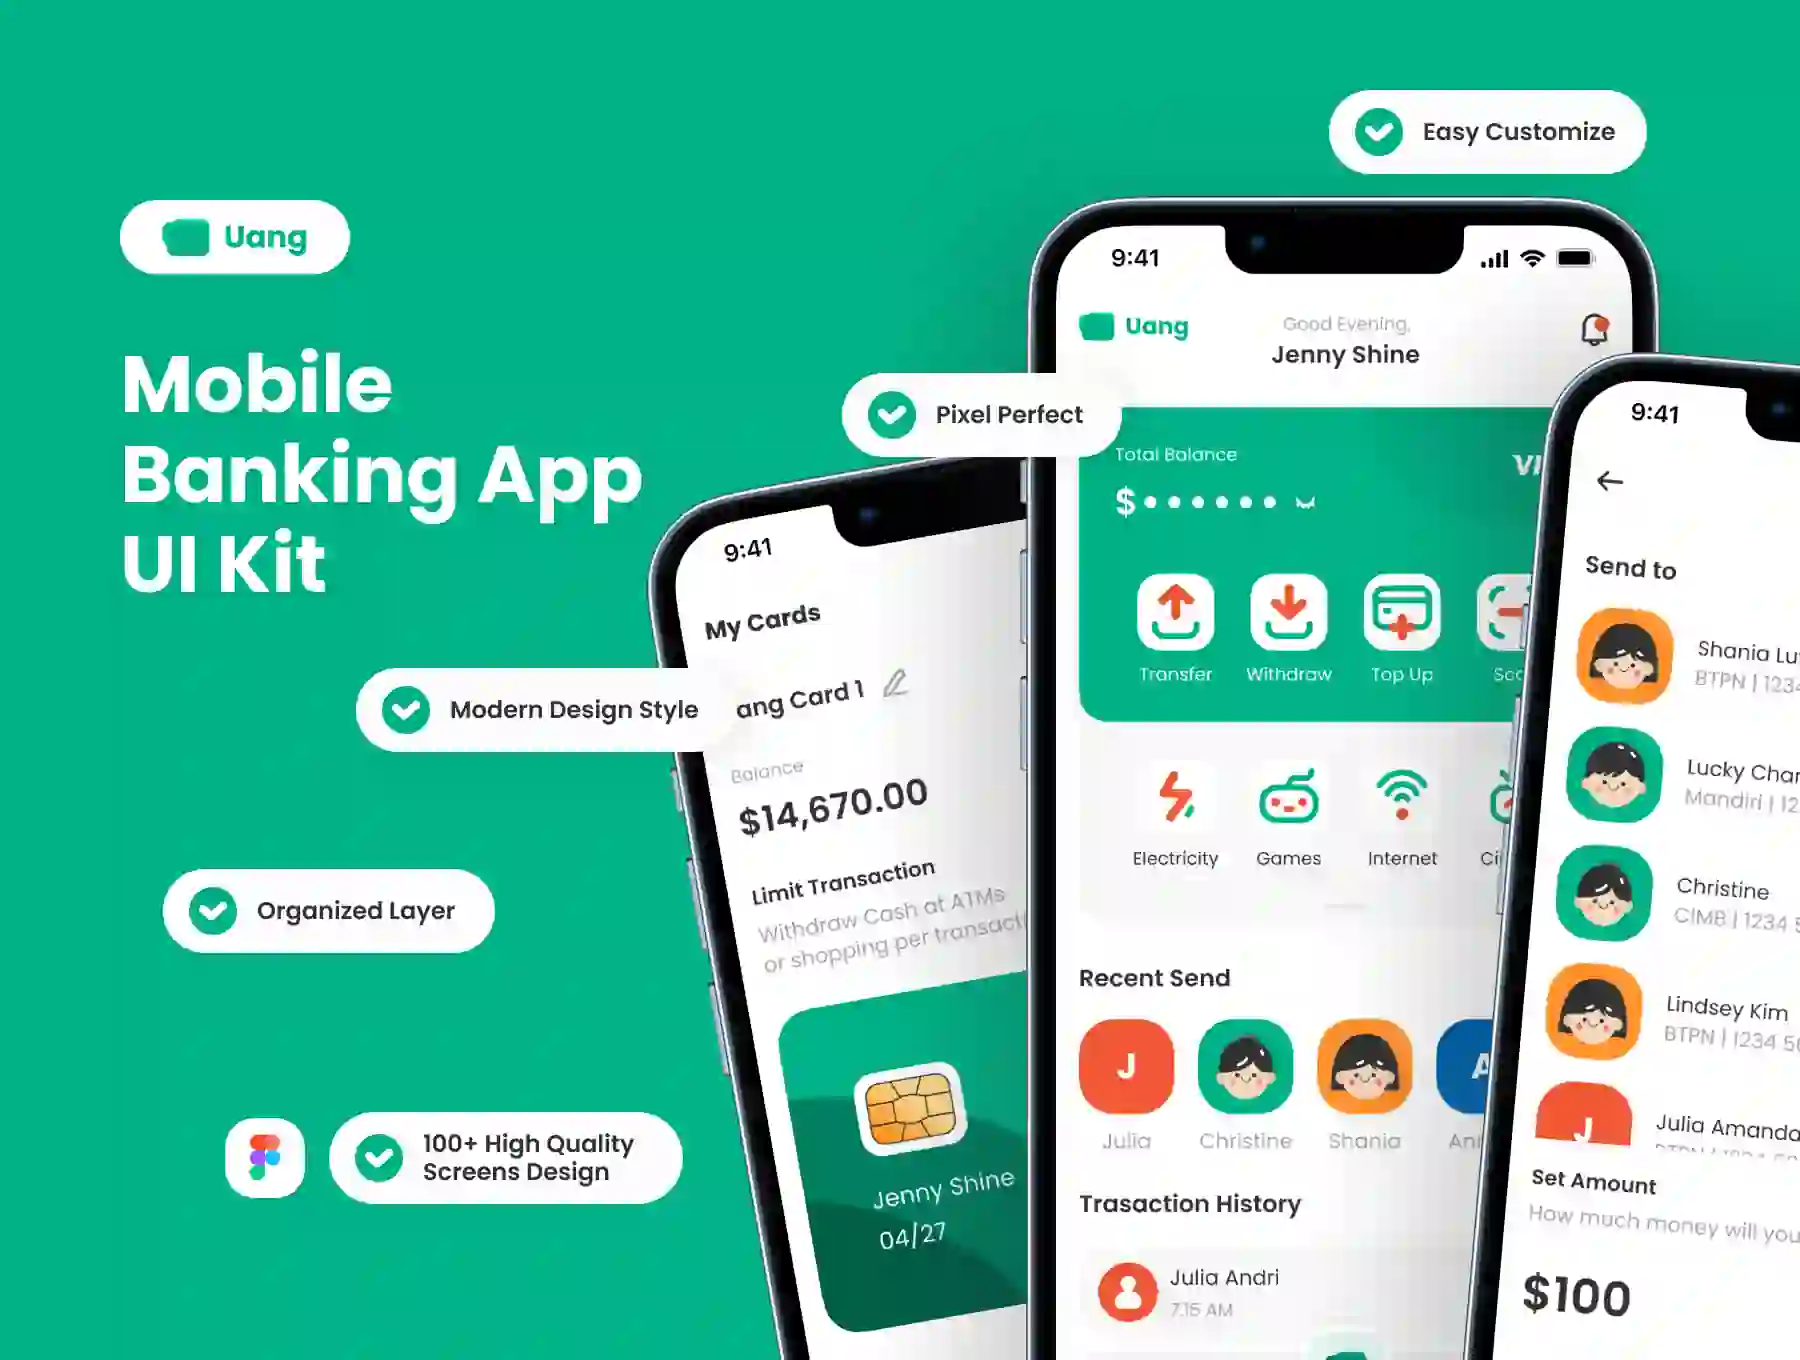 Uang - Mobile Banking App UI Kit